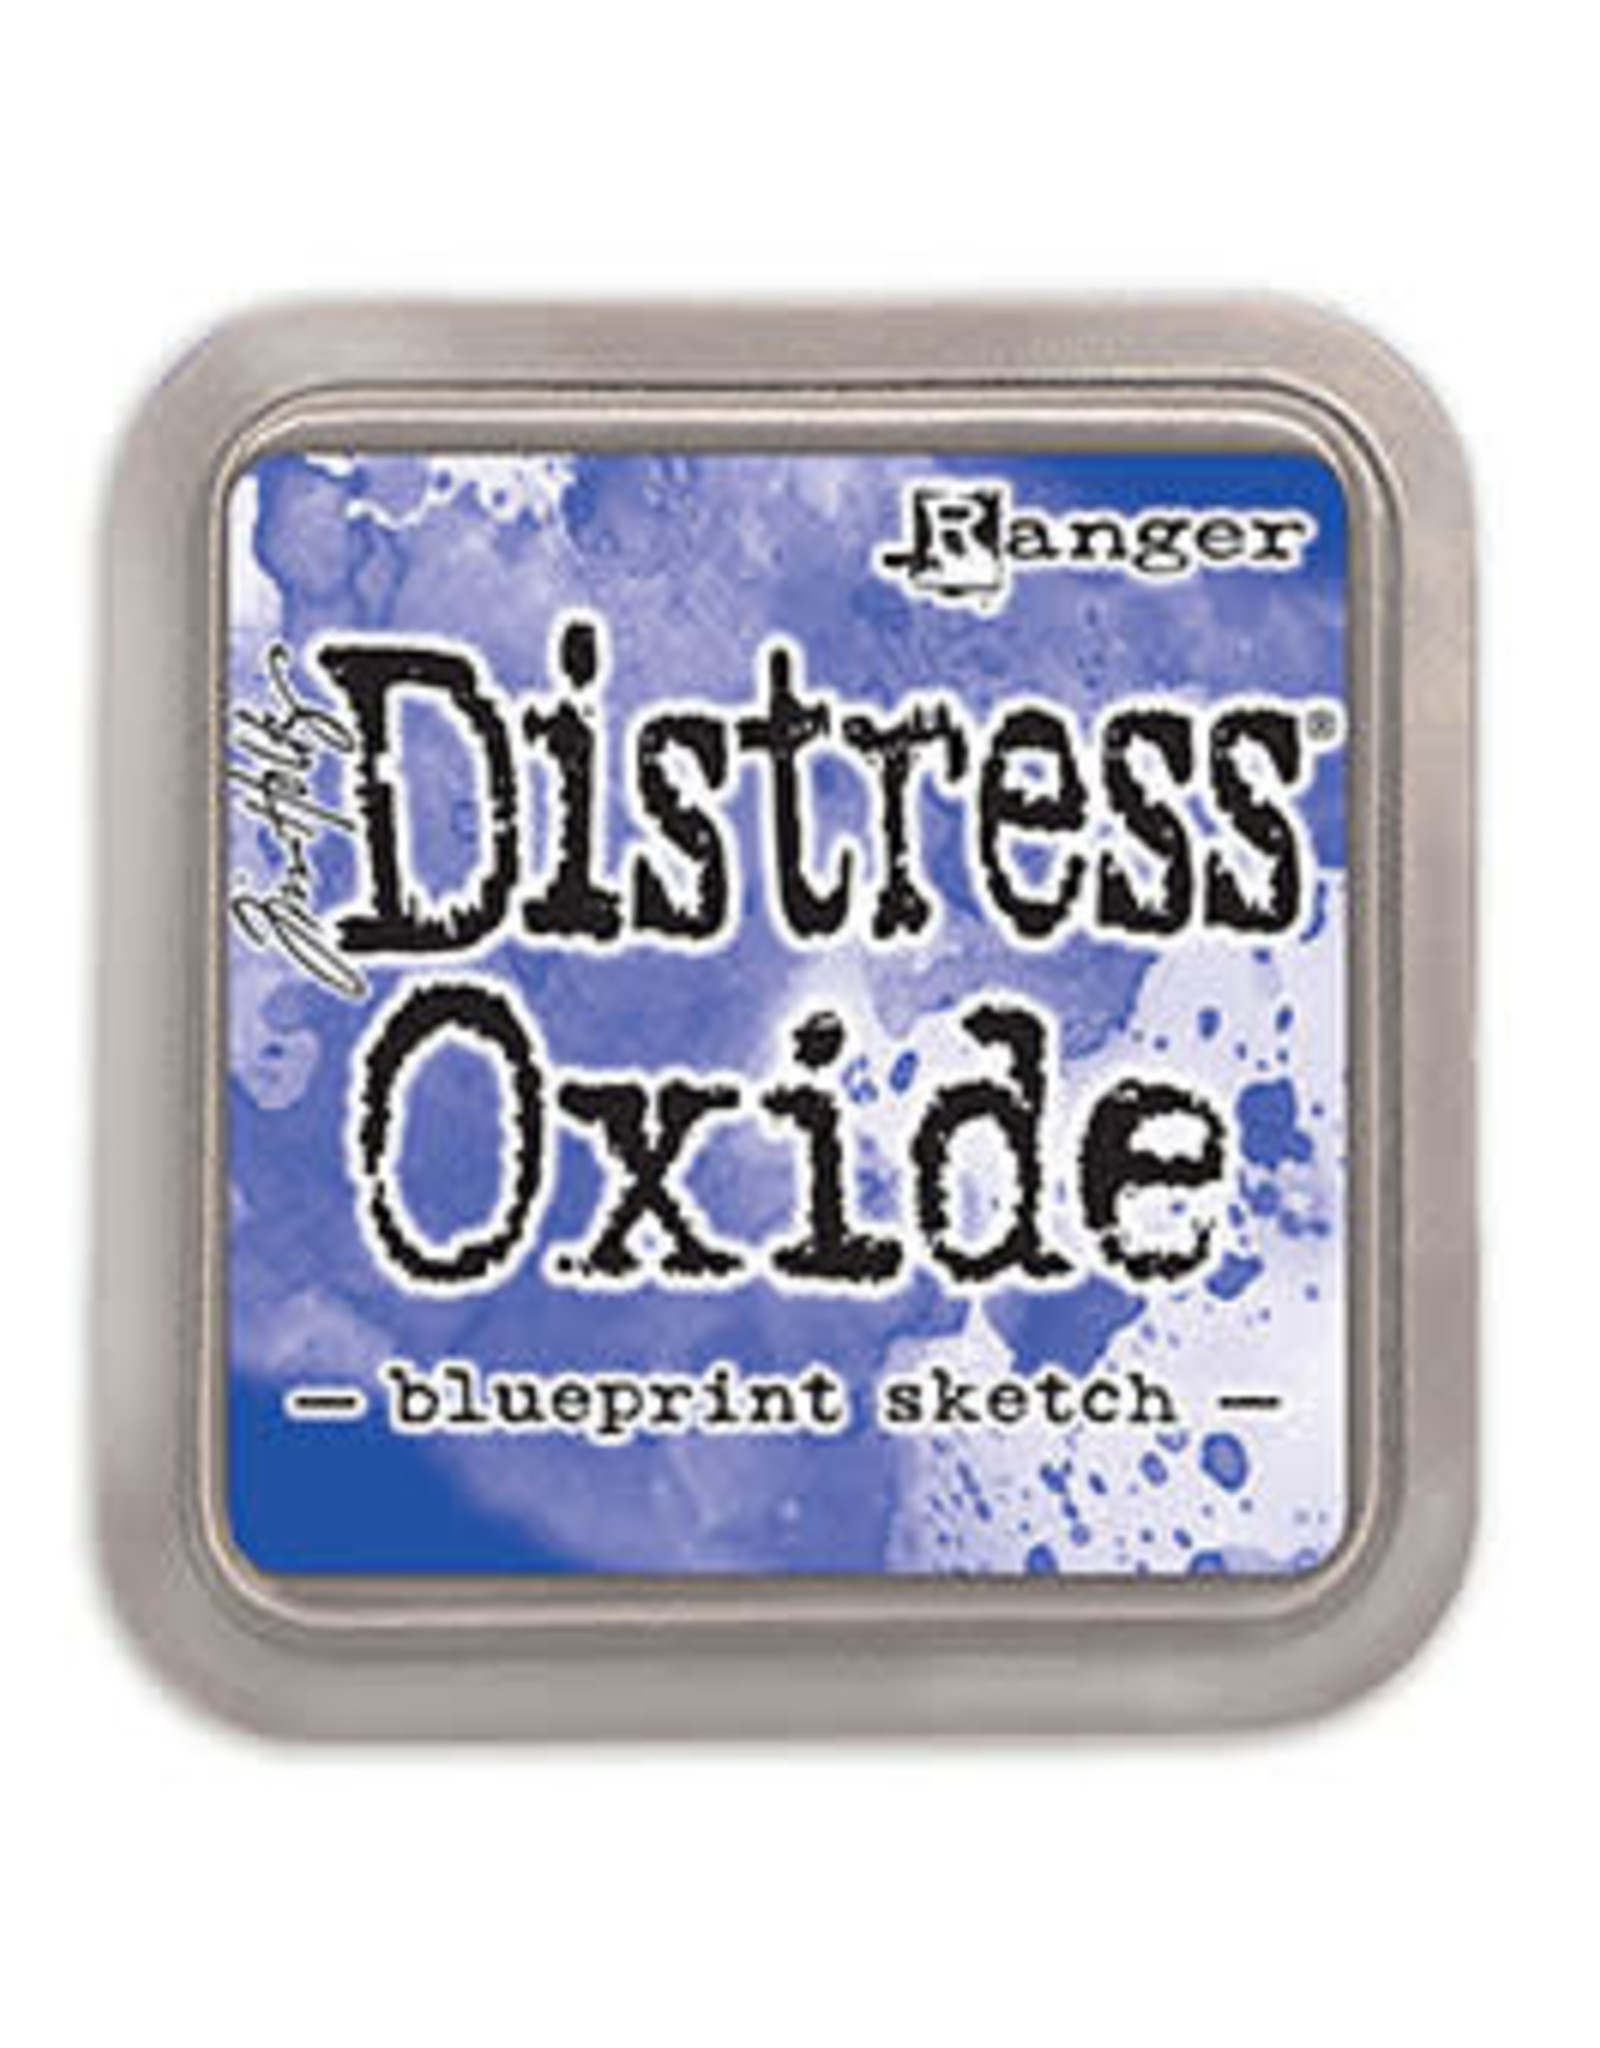 Tim Holtz - Ranger Distress Oxide Blueprint Sketch